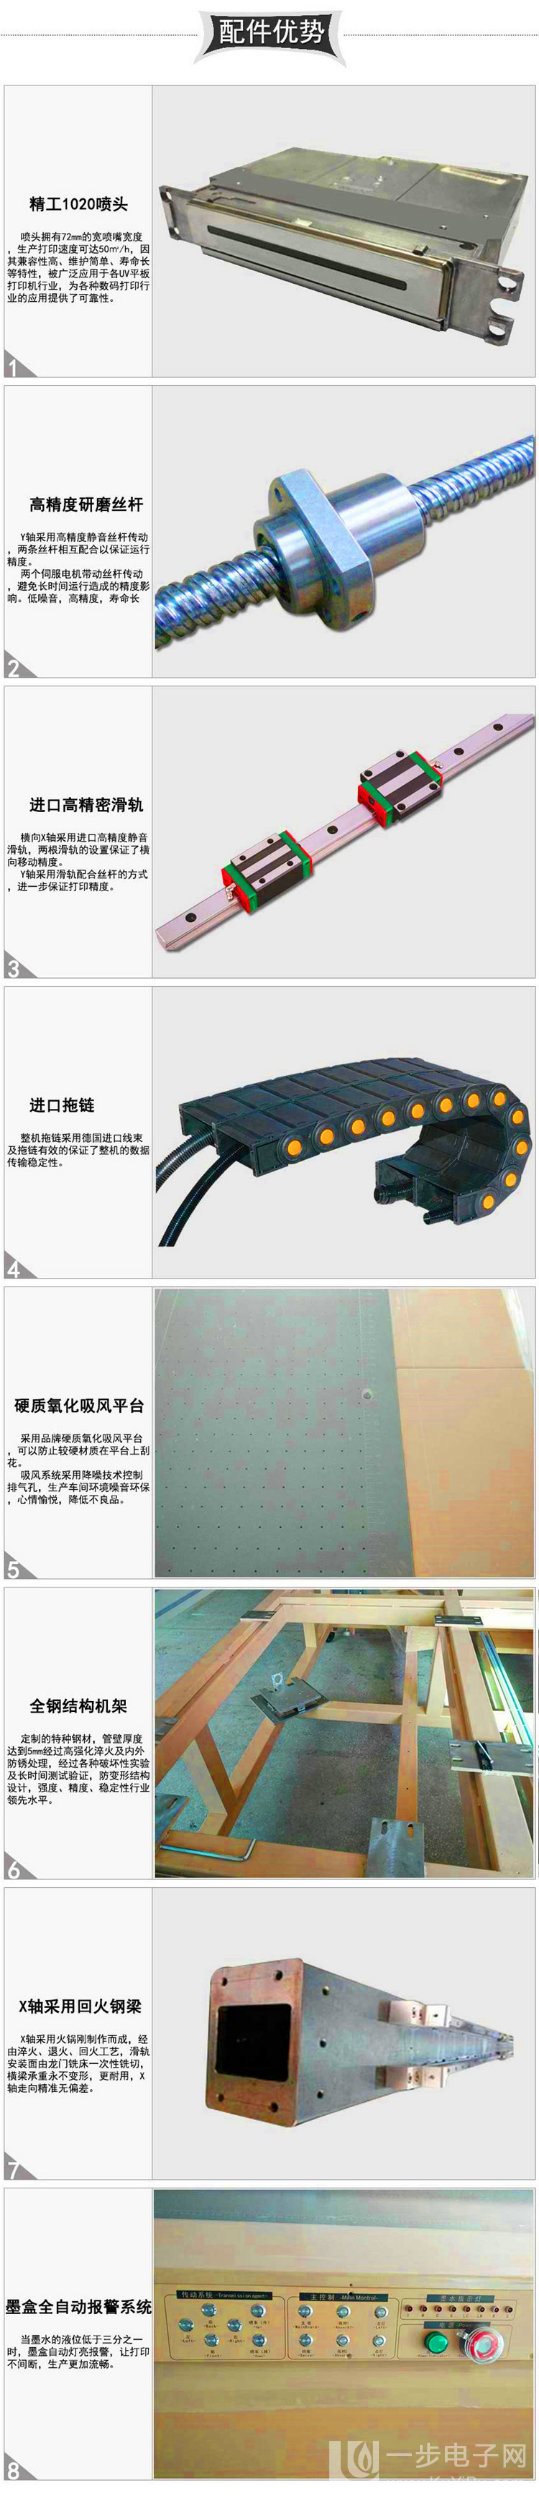 深圳UV数码印刷机厂家_19